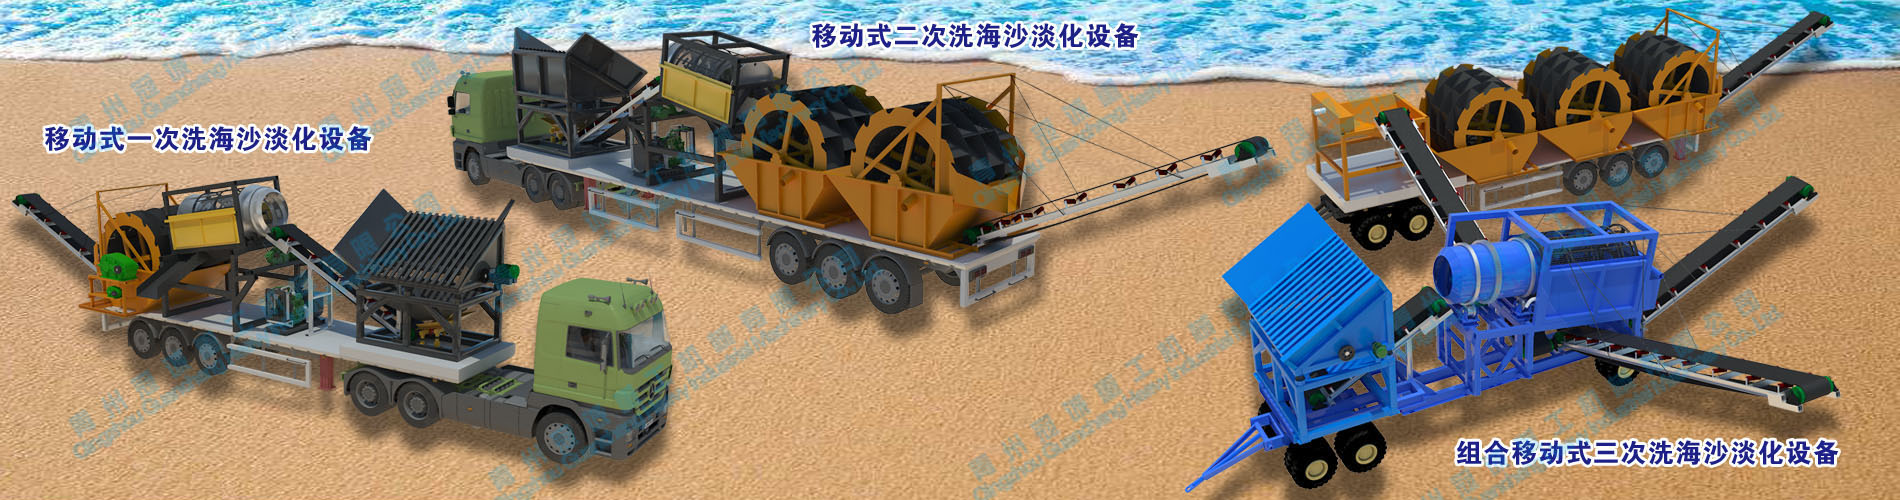 车载移动式海砂淡化设备-海砂处理-海砂净化-洗砂机械